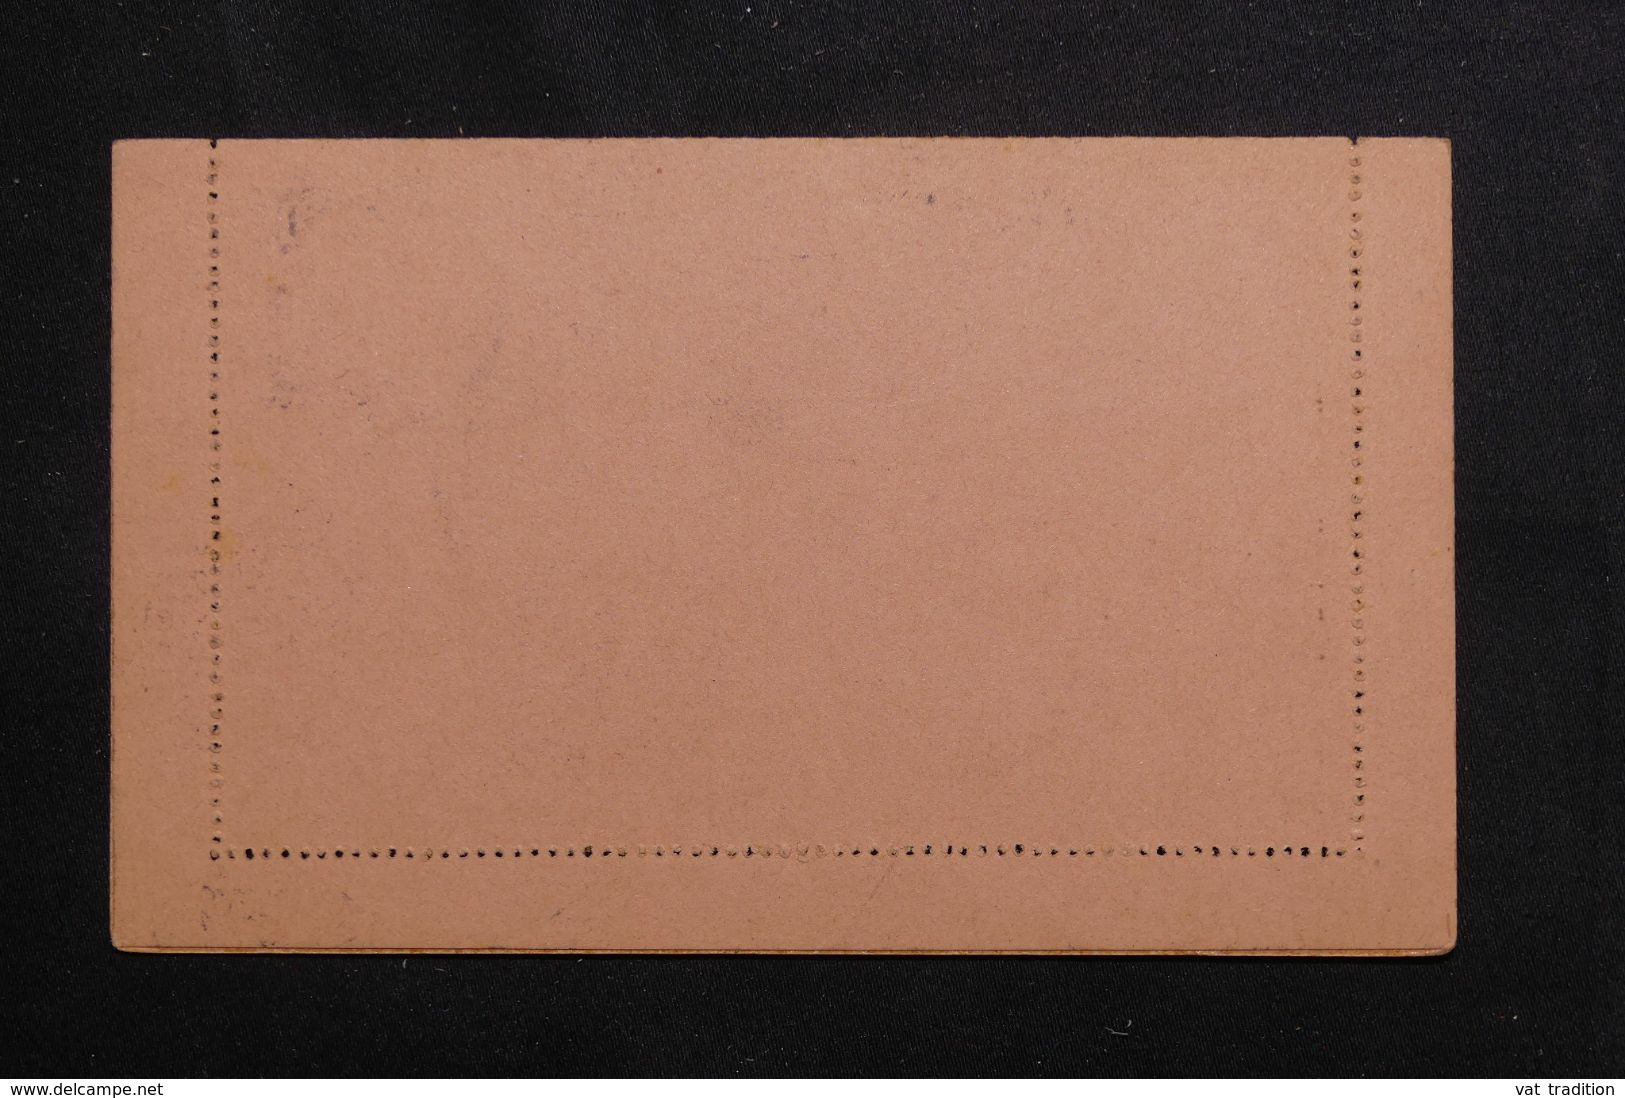 SOUDAN - Entier Postal Type Groupe Avec Oblitération De Kati - L 65546 - Storia Postale